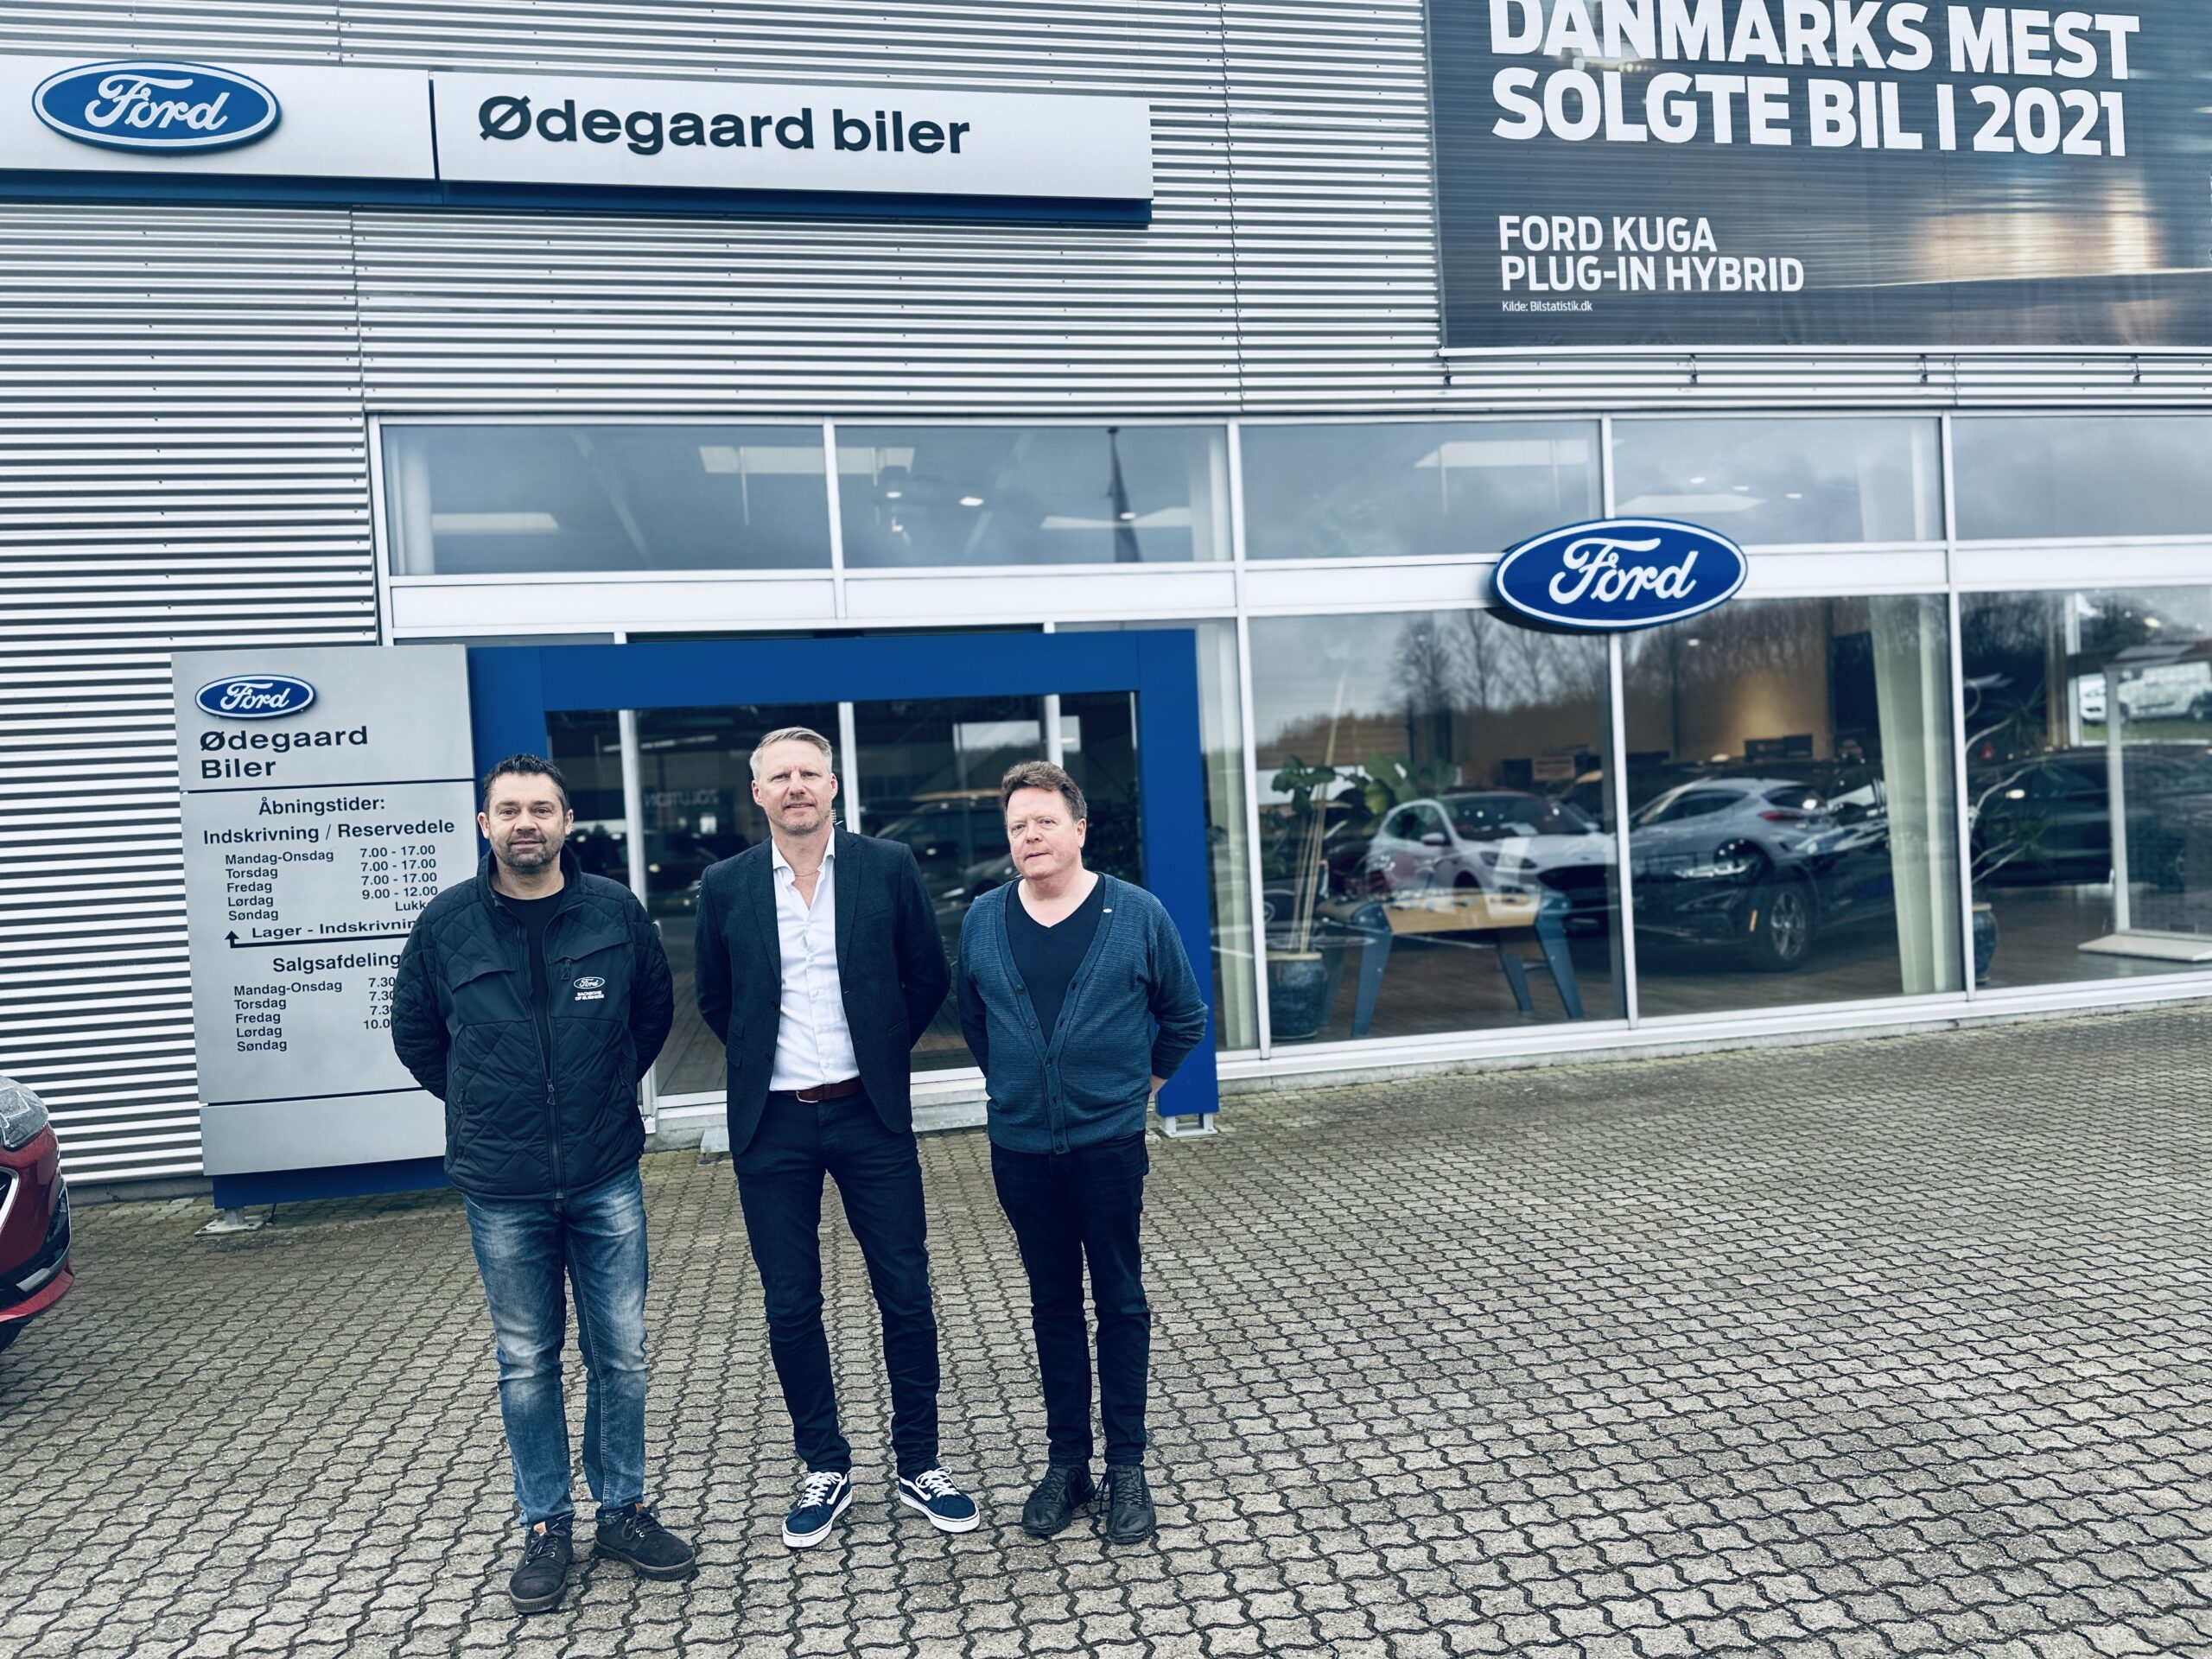 Selandia Automobiler AS ekspanderer med opkøb af Ødegaard Biler AS